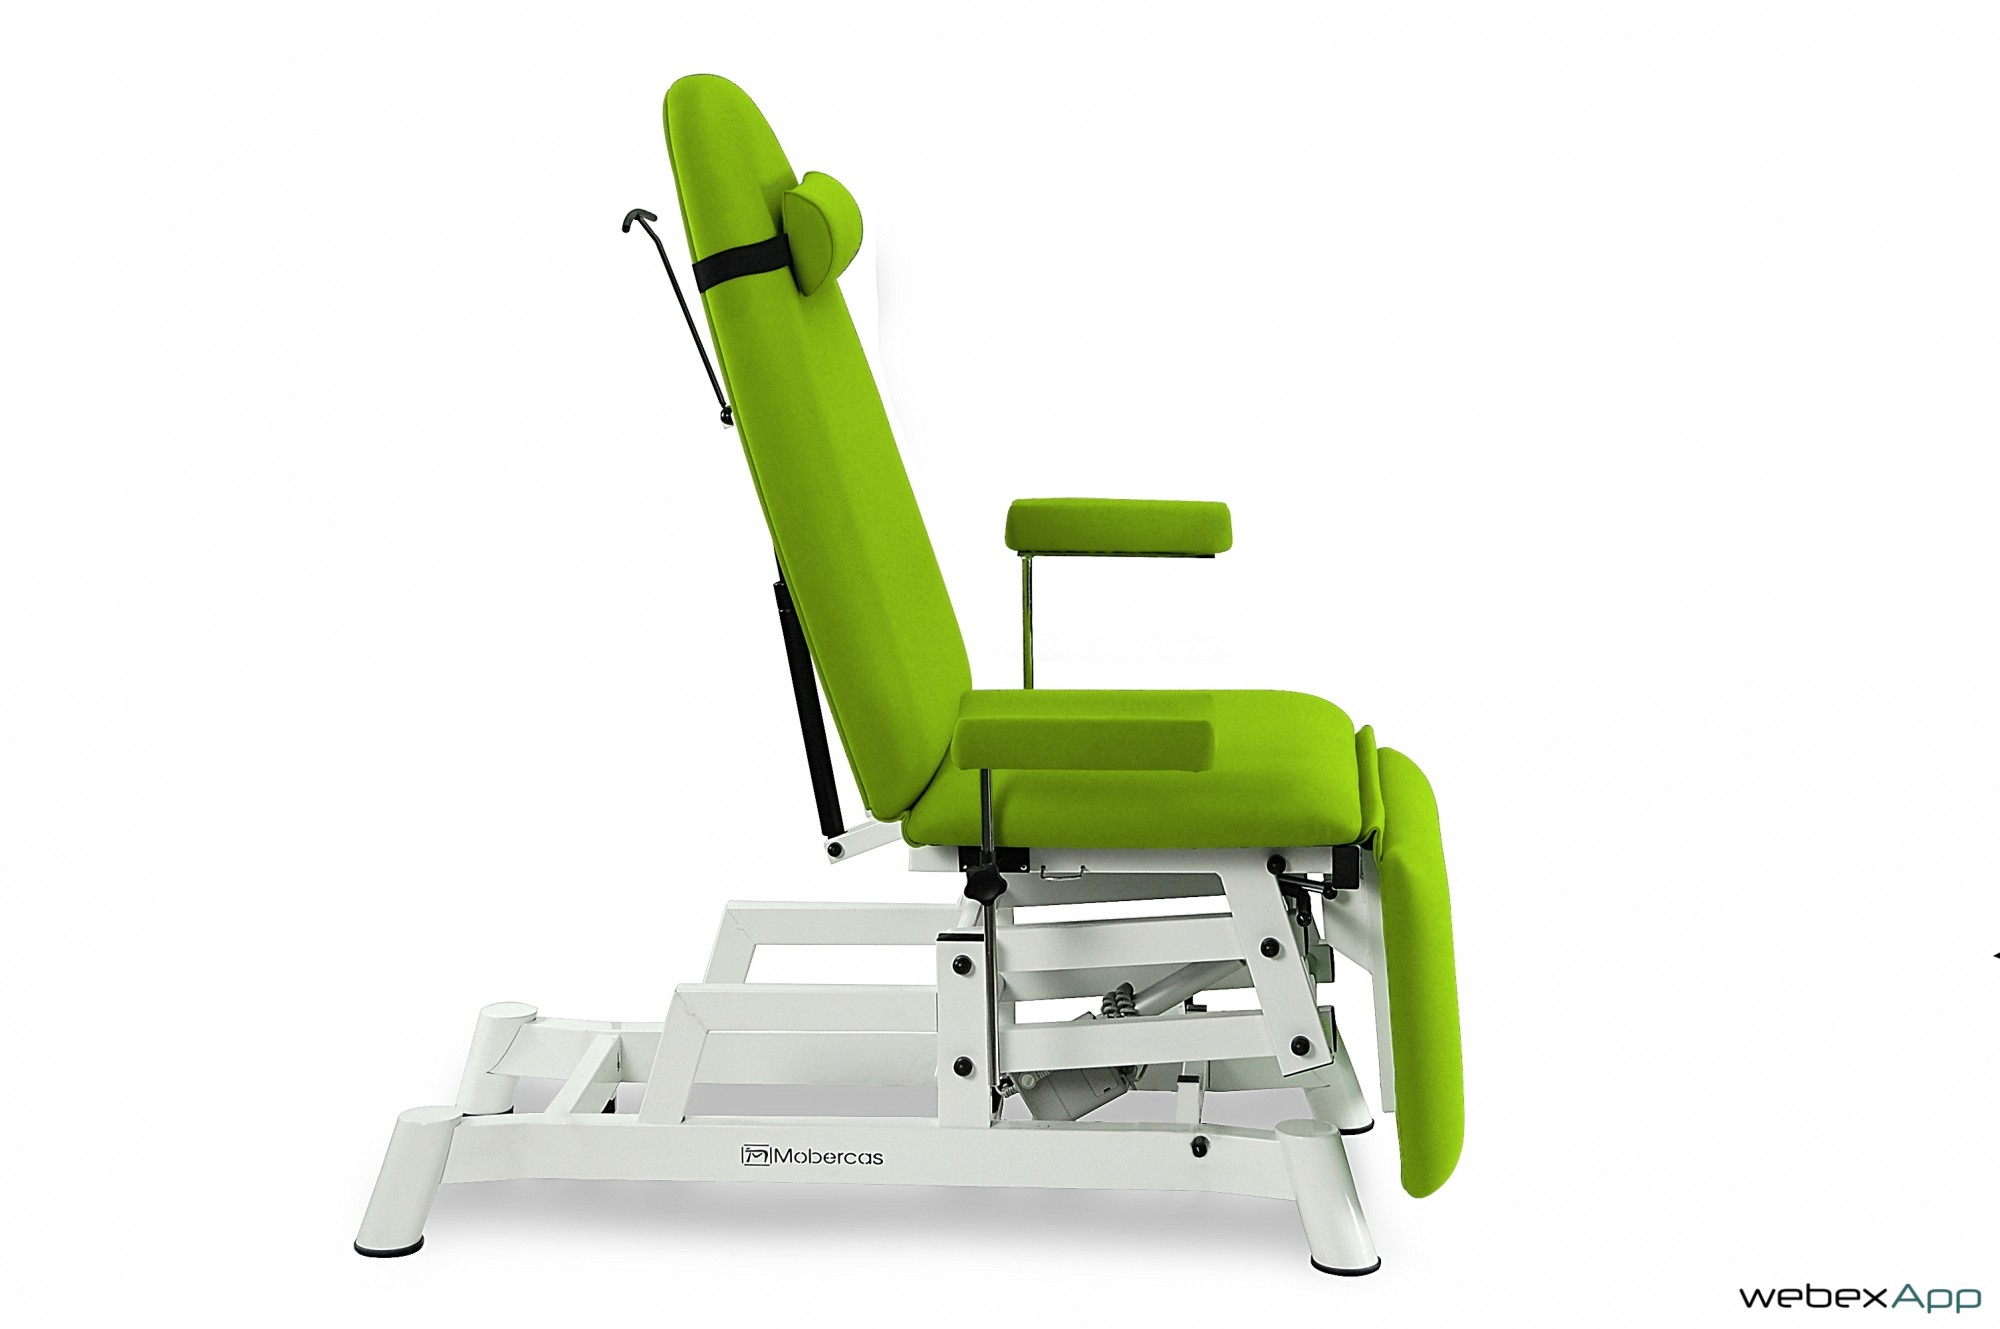 tablelya-CE-1130-EXT-fauteuil-electrique-pour prises de sang mobercas fabricant vue de coté